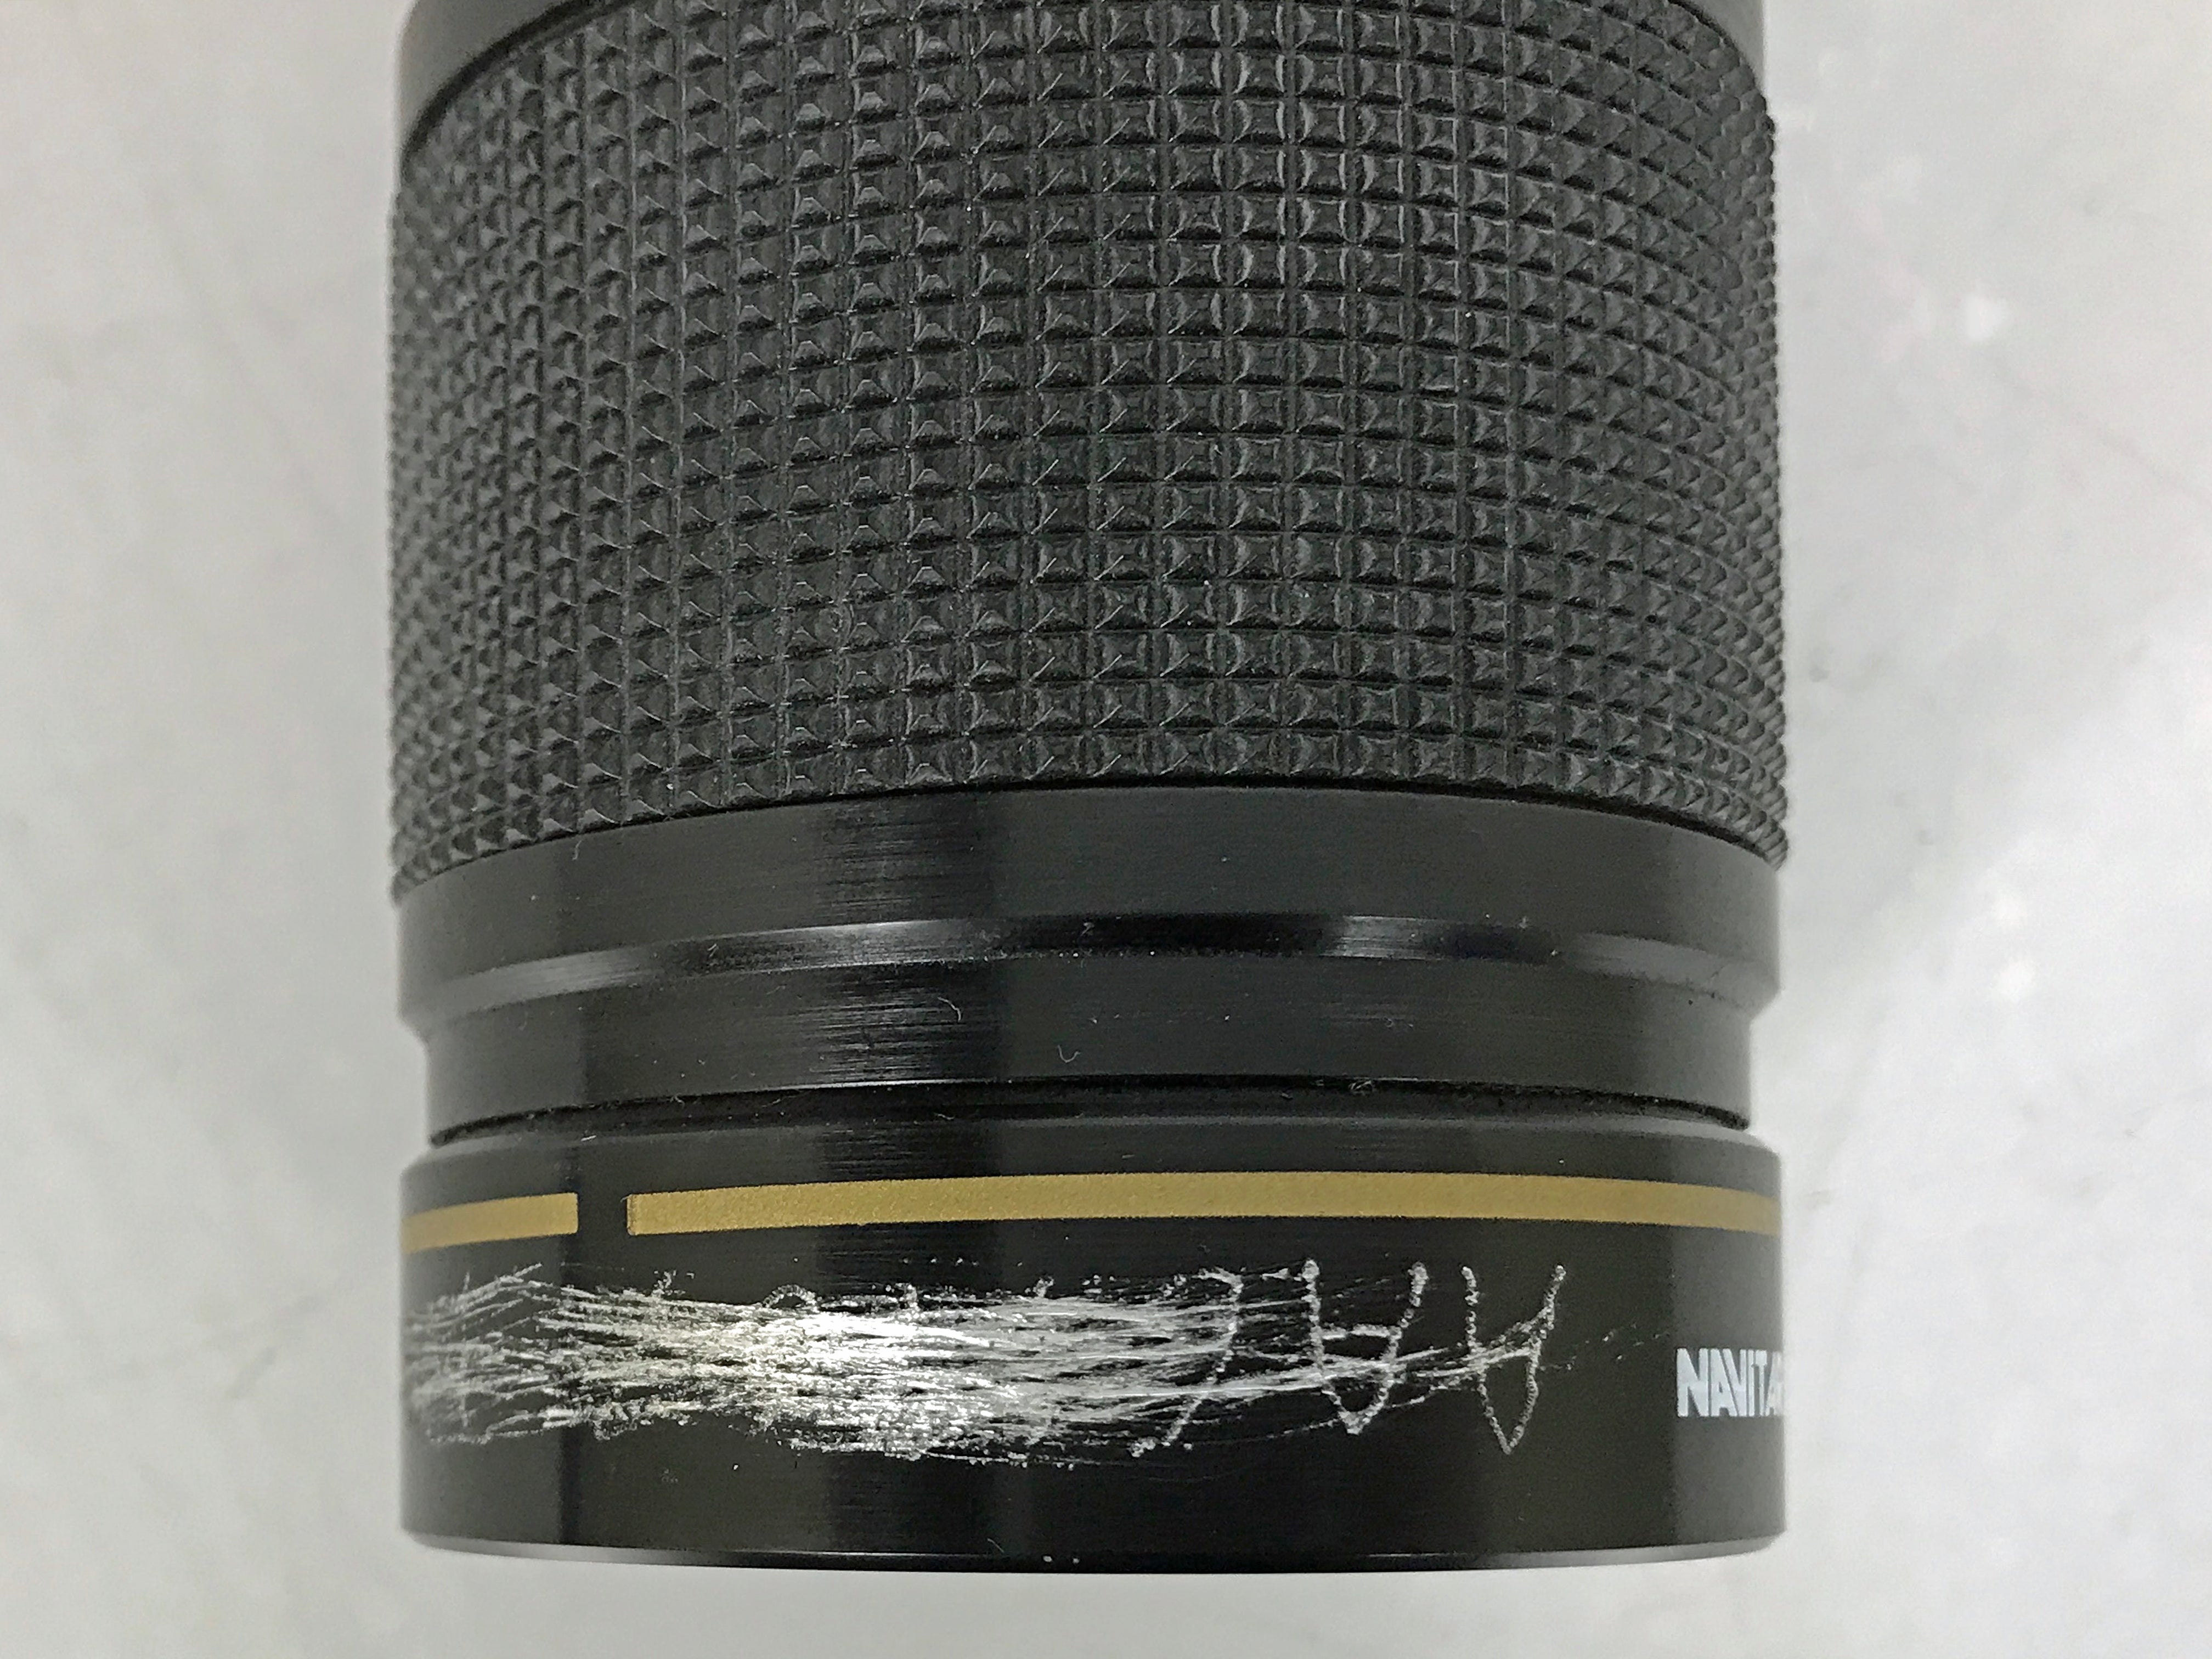 Golden Navitar 100-200mm f/3.5 Telephoto Zoom Lens